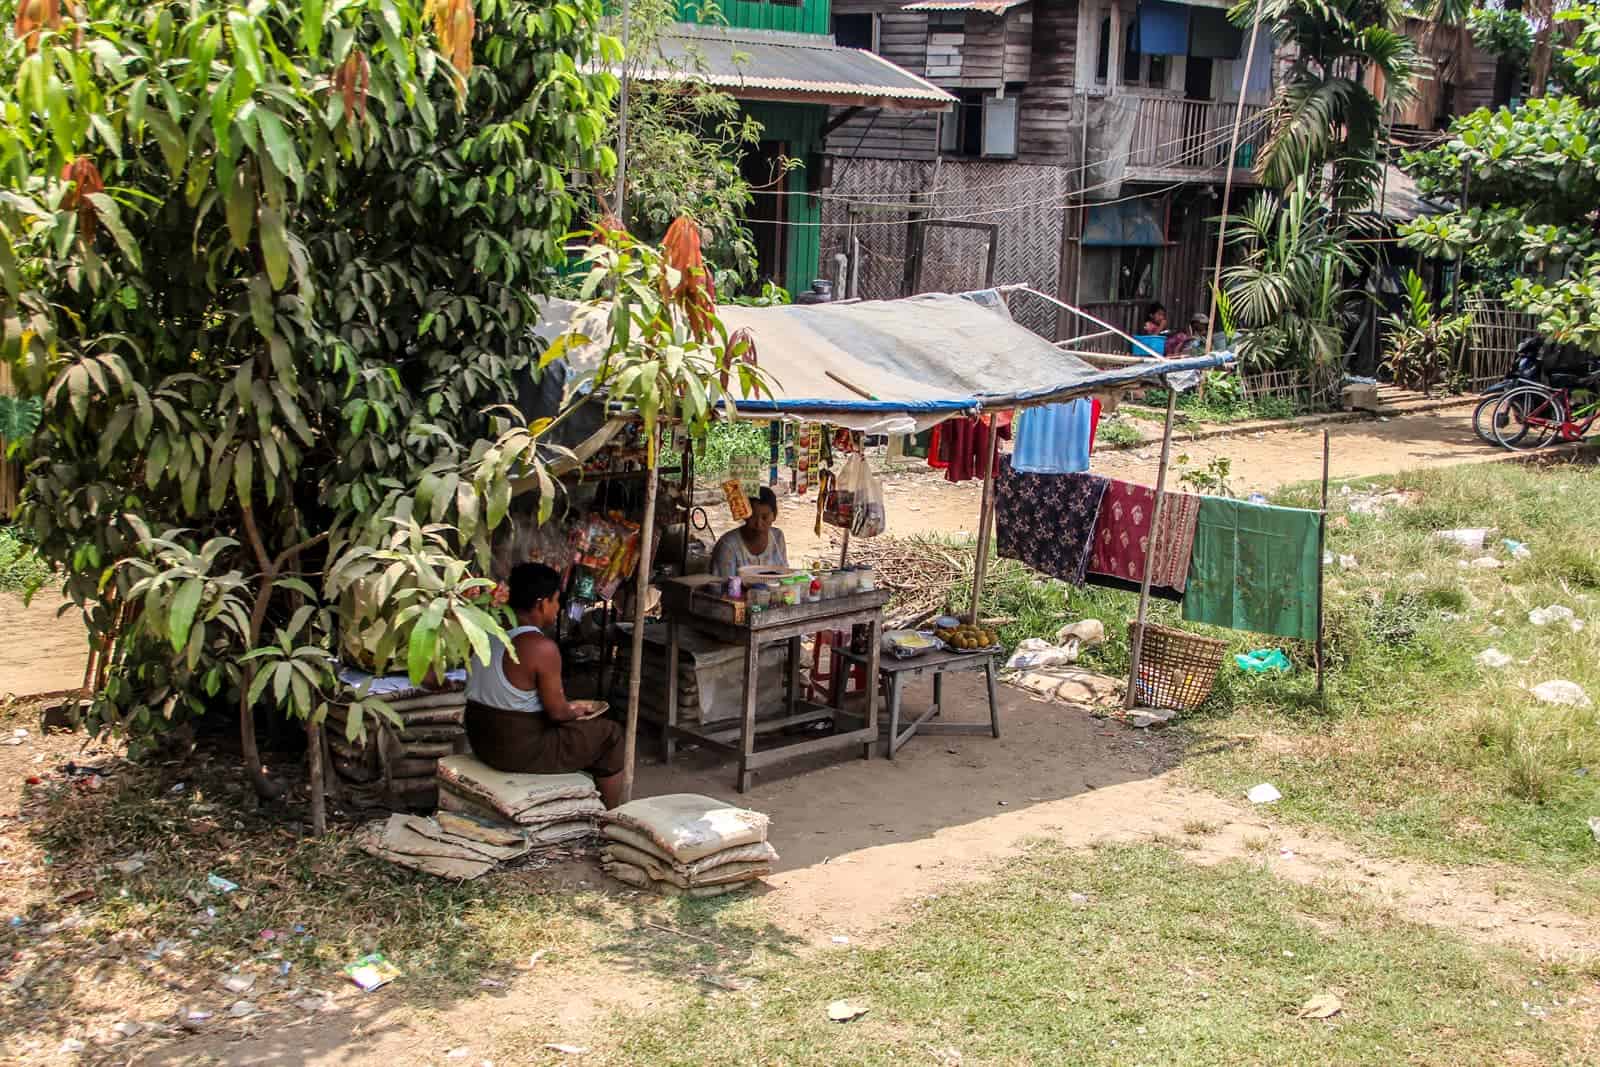 Rural life of Yangon Circular Train in Myanmar